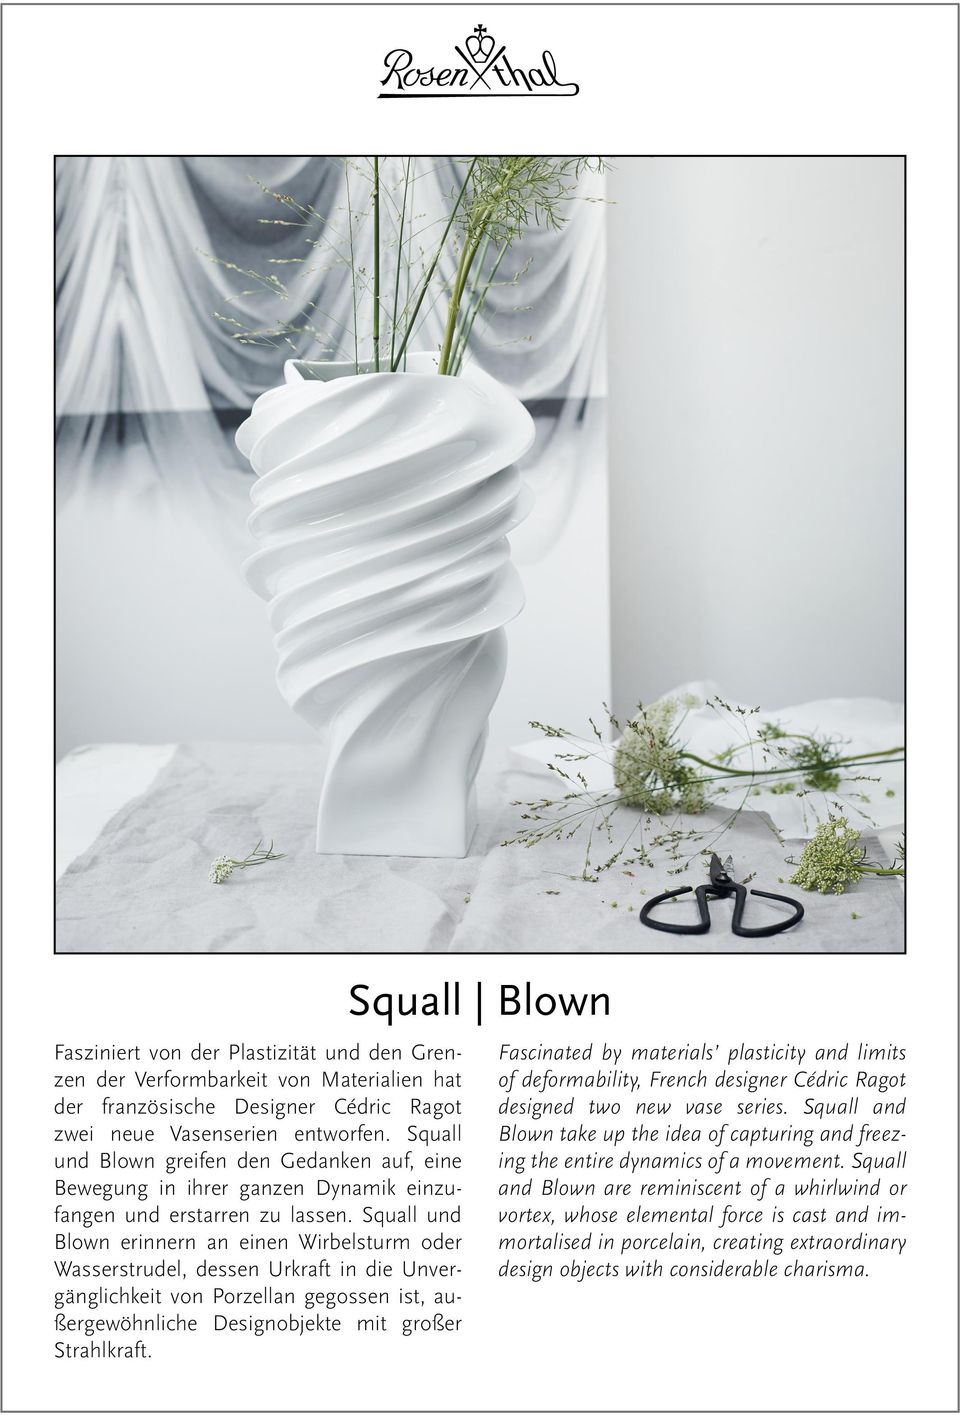 Squall und Blown erinnern an einen Wirbelsturm oder Wasserstrudel, dessen Urkraft in die Unvergänglichkeit von Porzellan gegossen ist, außergewöhnliche Designobjekte mit großer Strahlkraft.